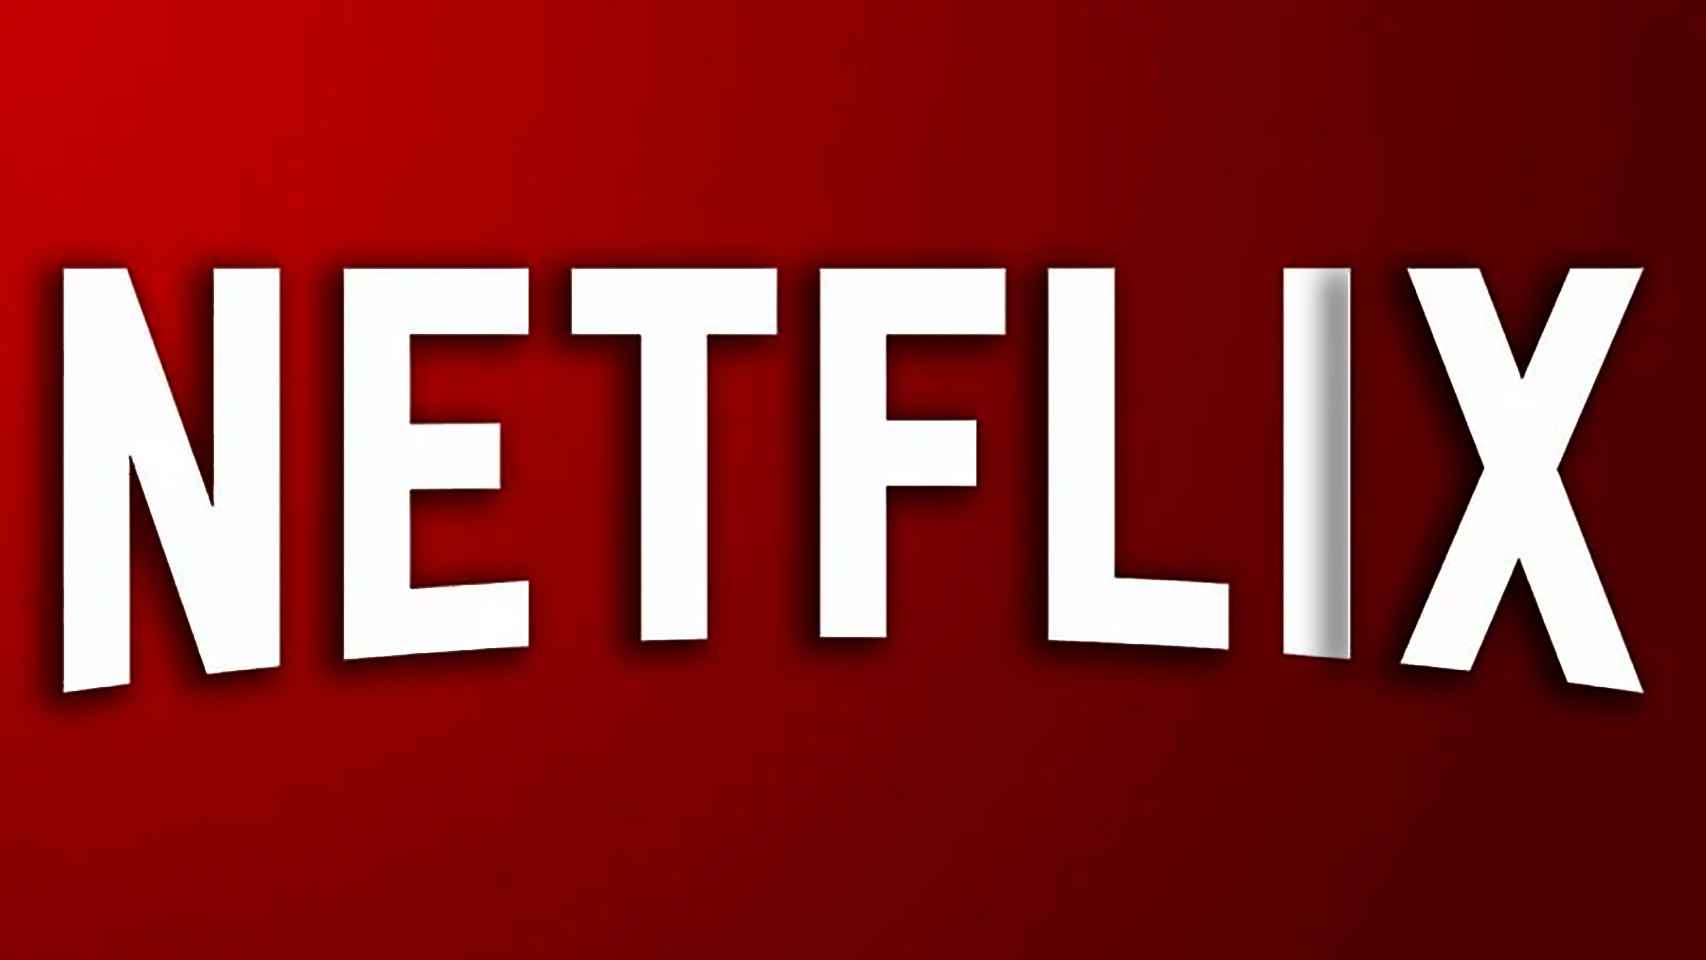 Netflix comenzará a forzar el pago por contraseña compartida en 2023